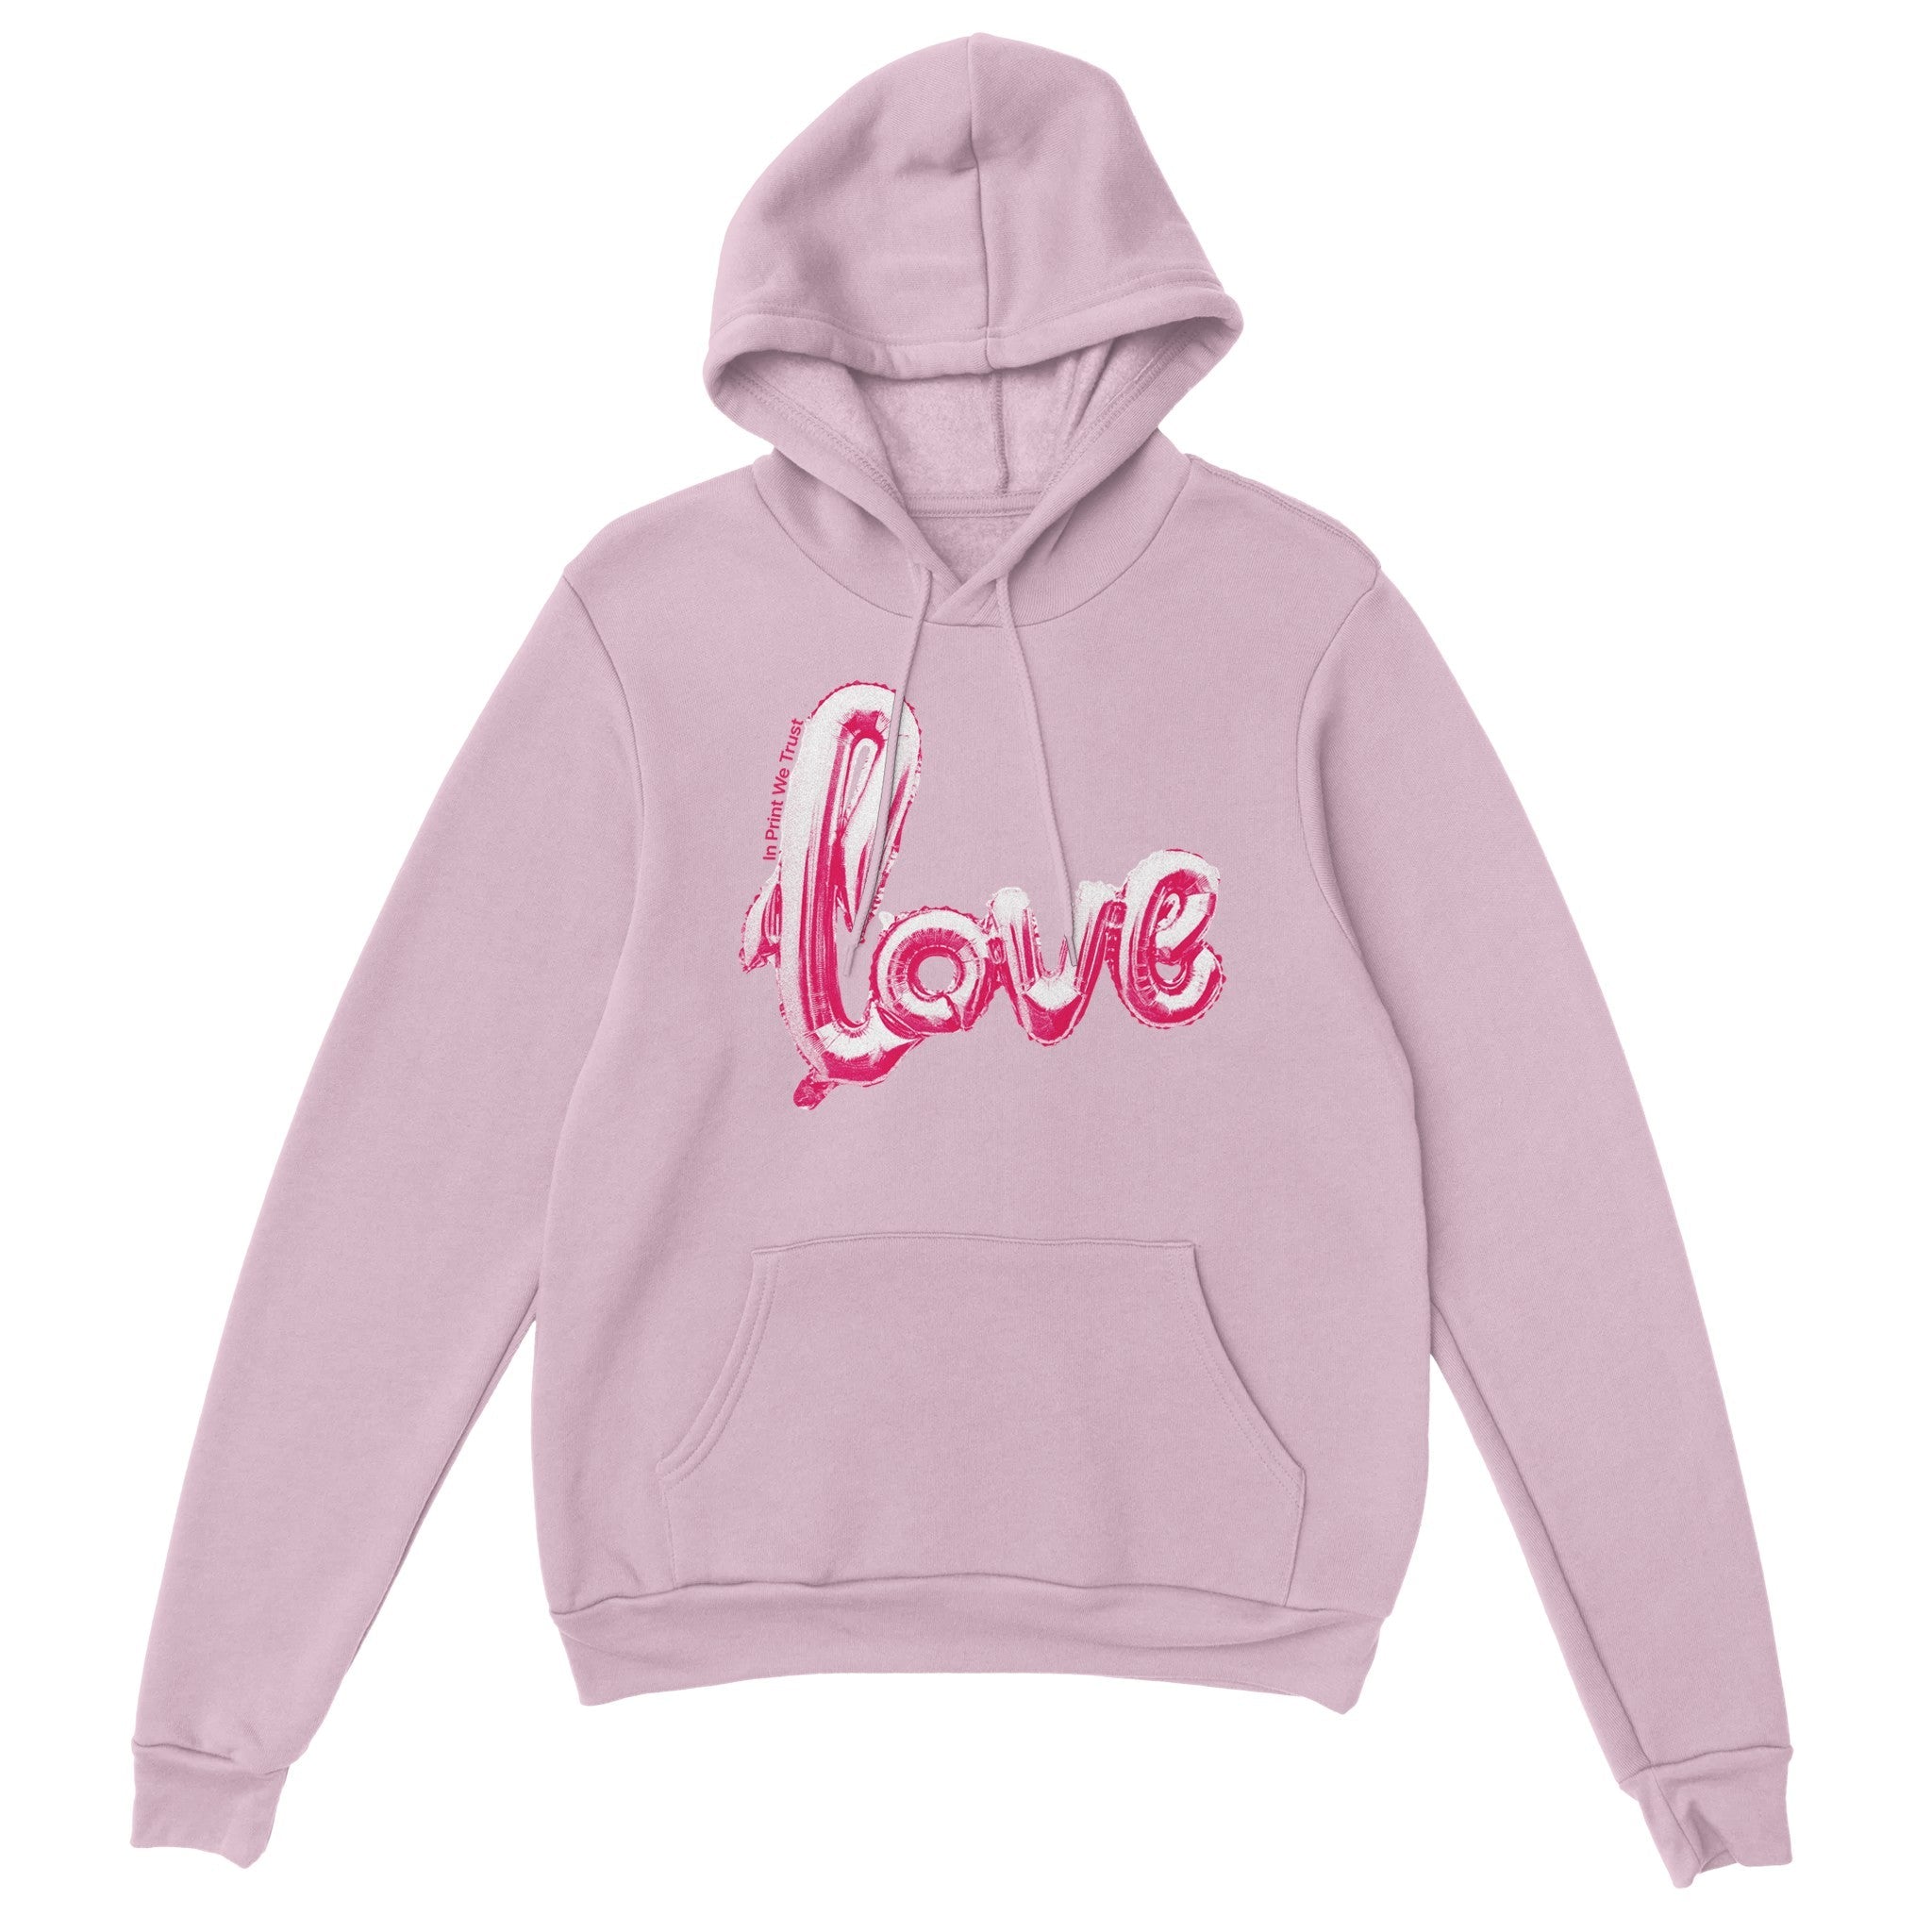 'Love' hoodie - In Print We Trust